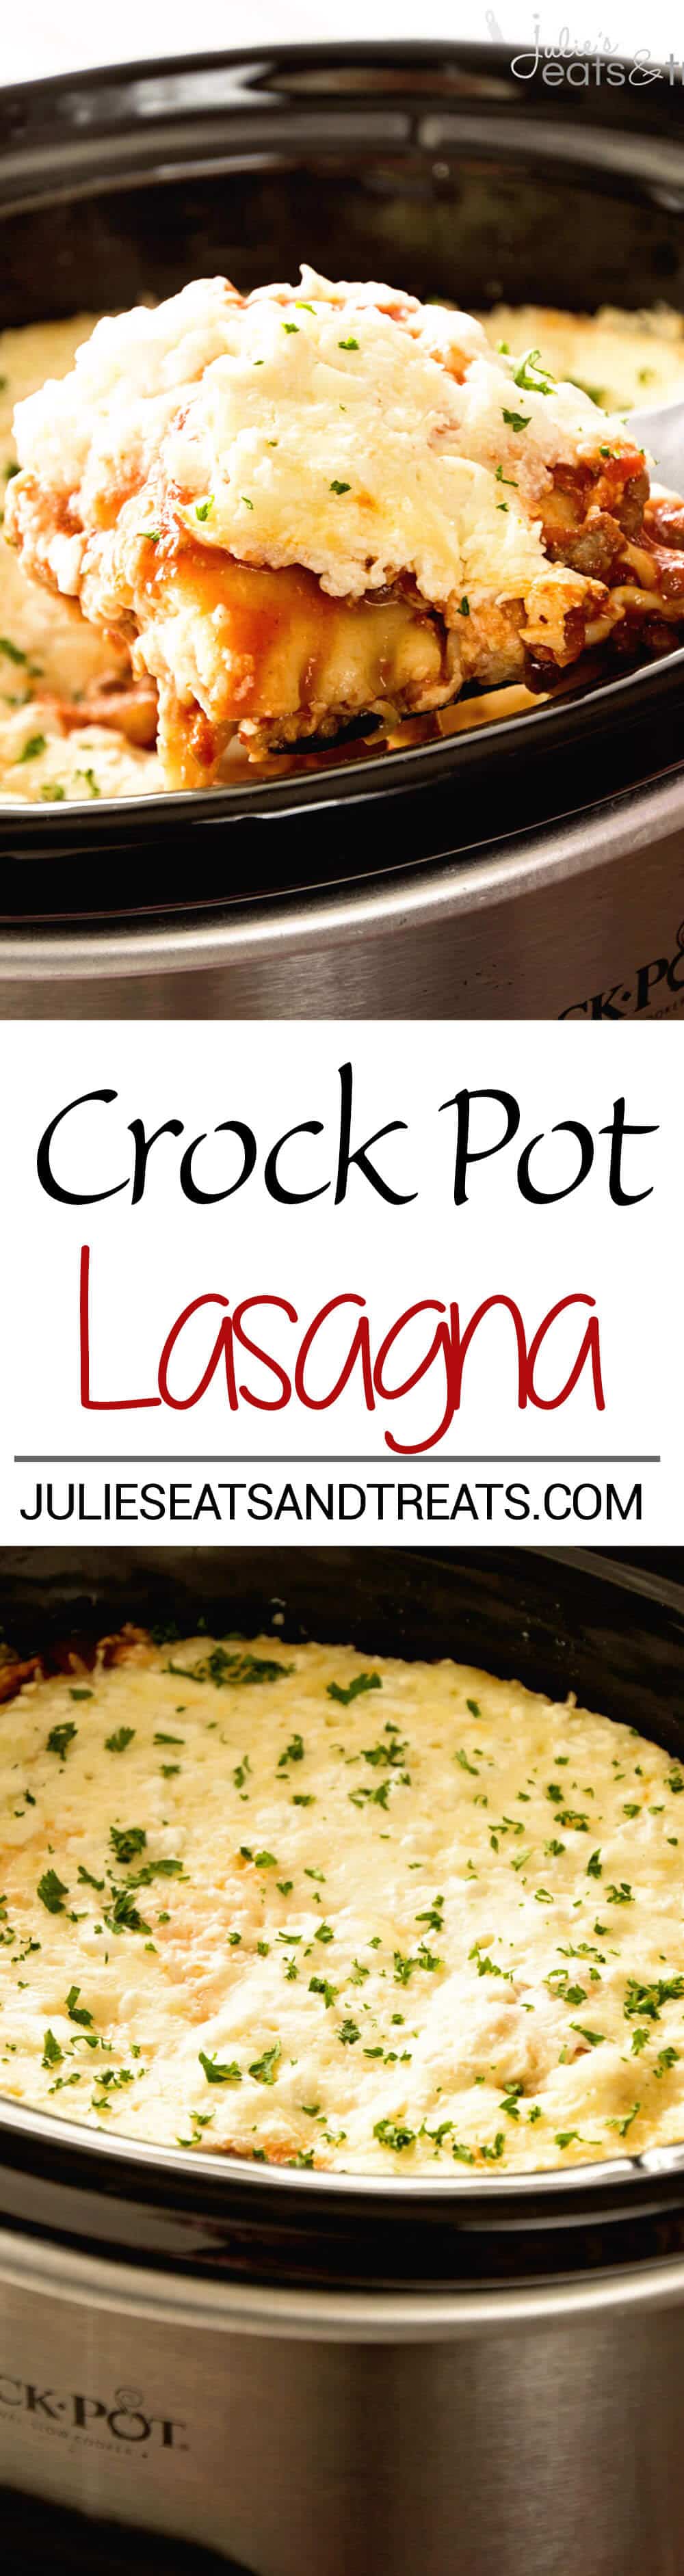 Crock Pot Lasagna Recipe - Julie's Eats & Treats